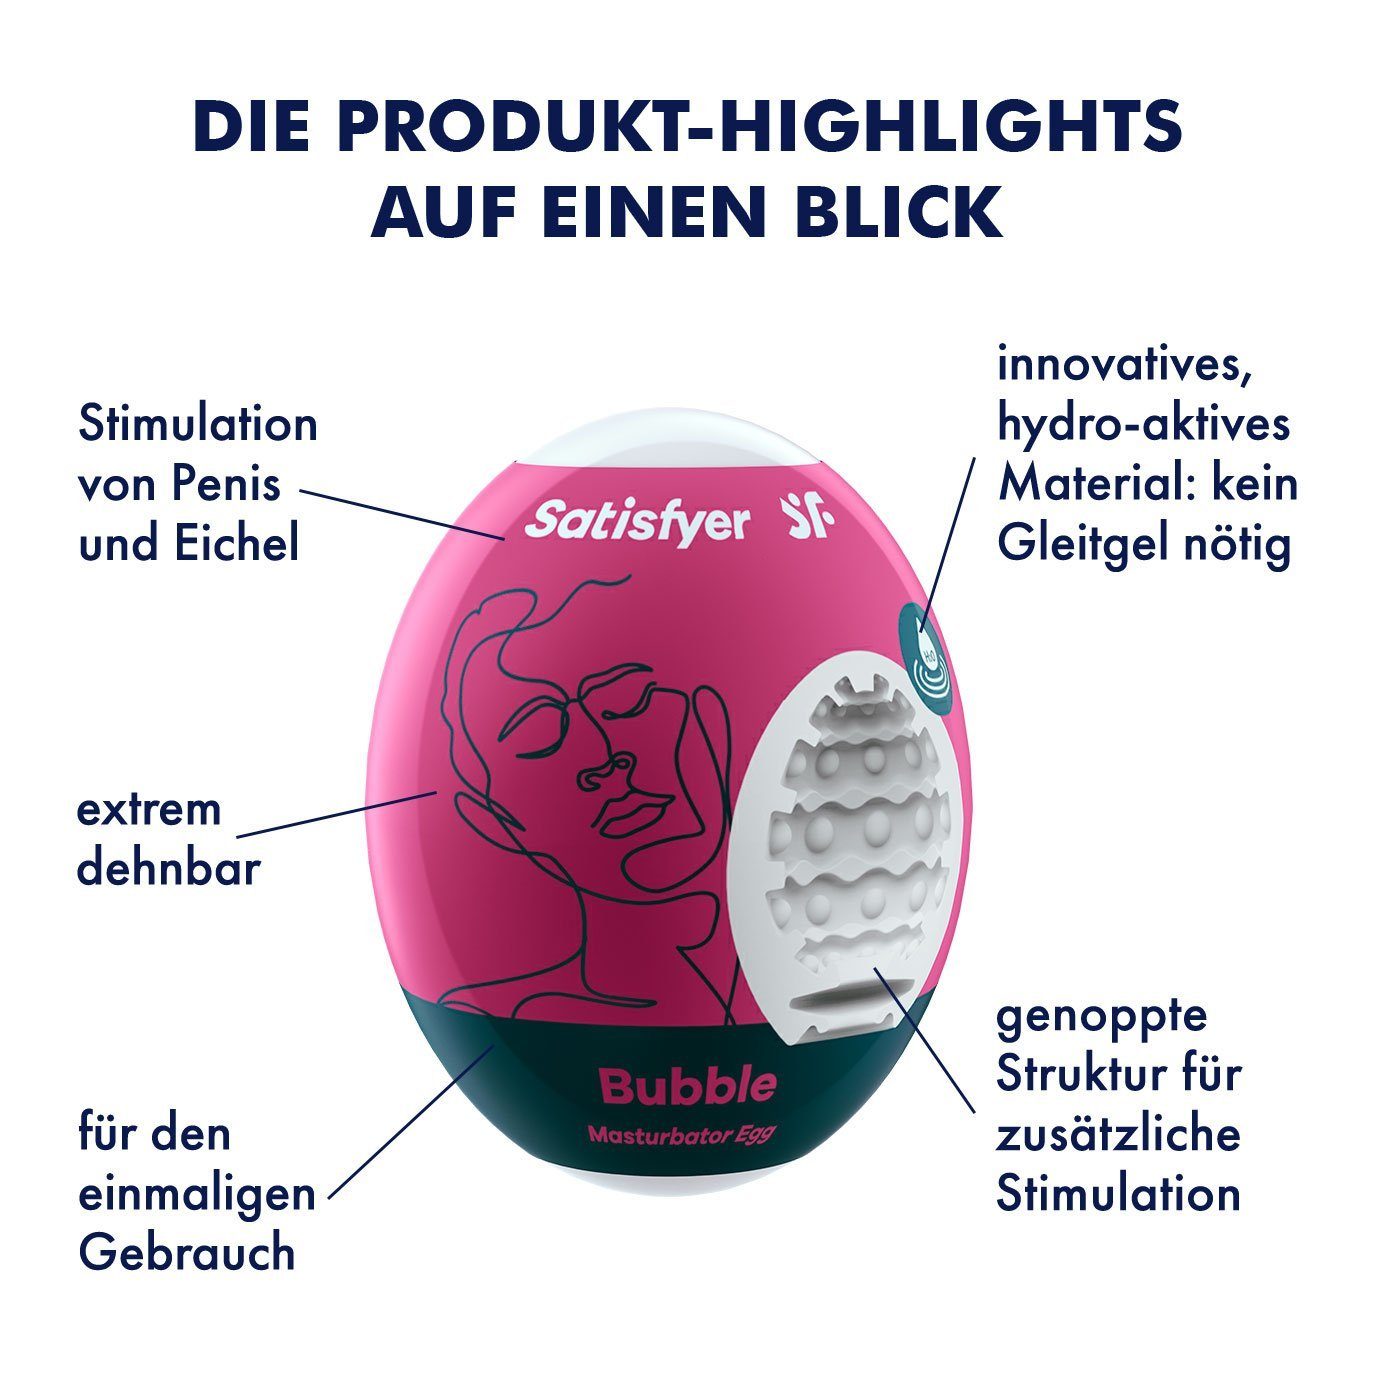 Satisfyer Riffle, Satisfyer hydroaktives ohne einmaliger Weichmacher; 3x Gebrauch Set Masturbator Struktur Egg, Bubble Masturbator "Bubble", dehnbar; TPE,